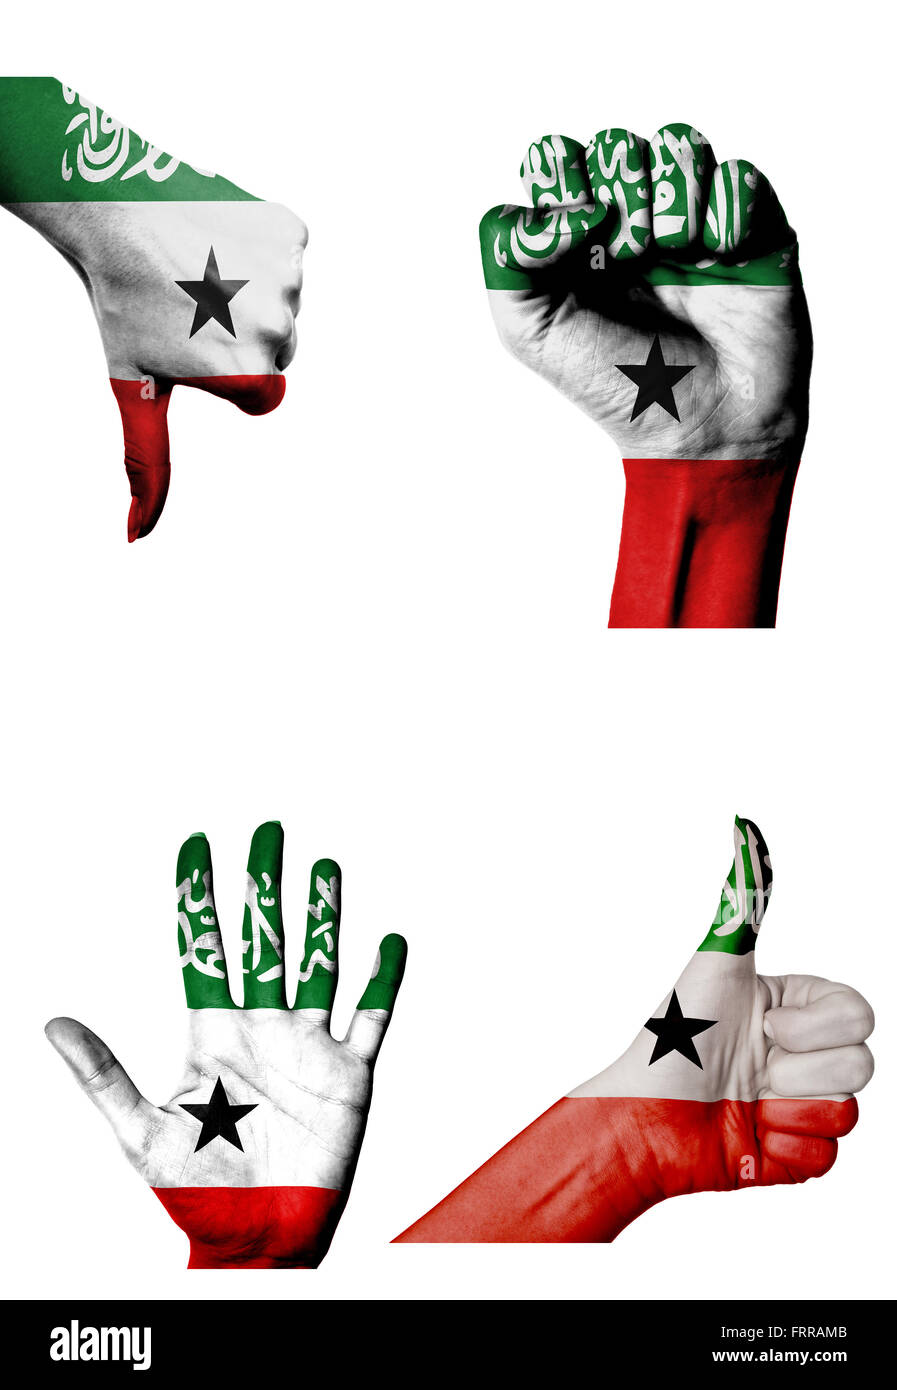 Les mains avec plusieurs gestes (poing fermé, paume ouverte, les pouces vers le haut et vers le bas) avec le Somaliland flag painted isolated on white Banque D'Images